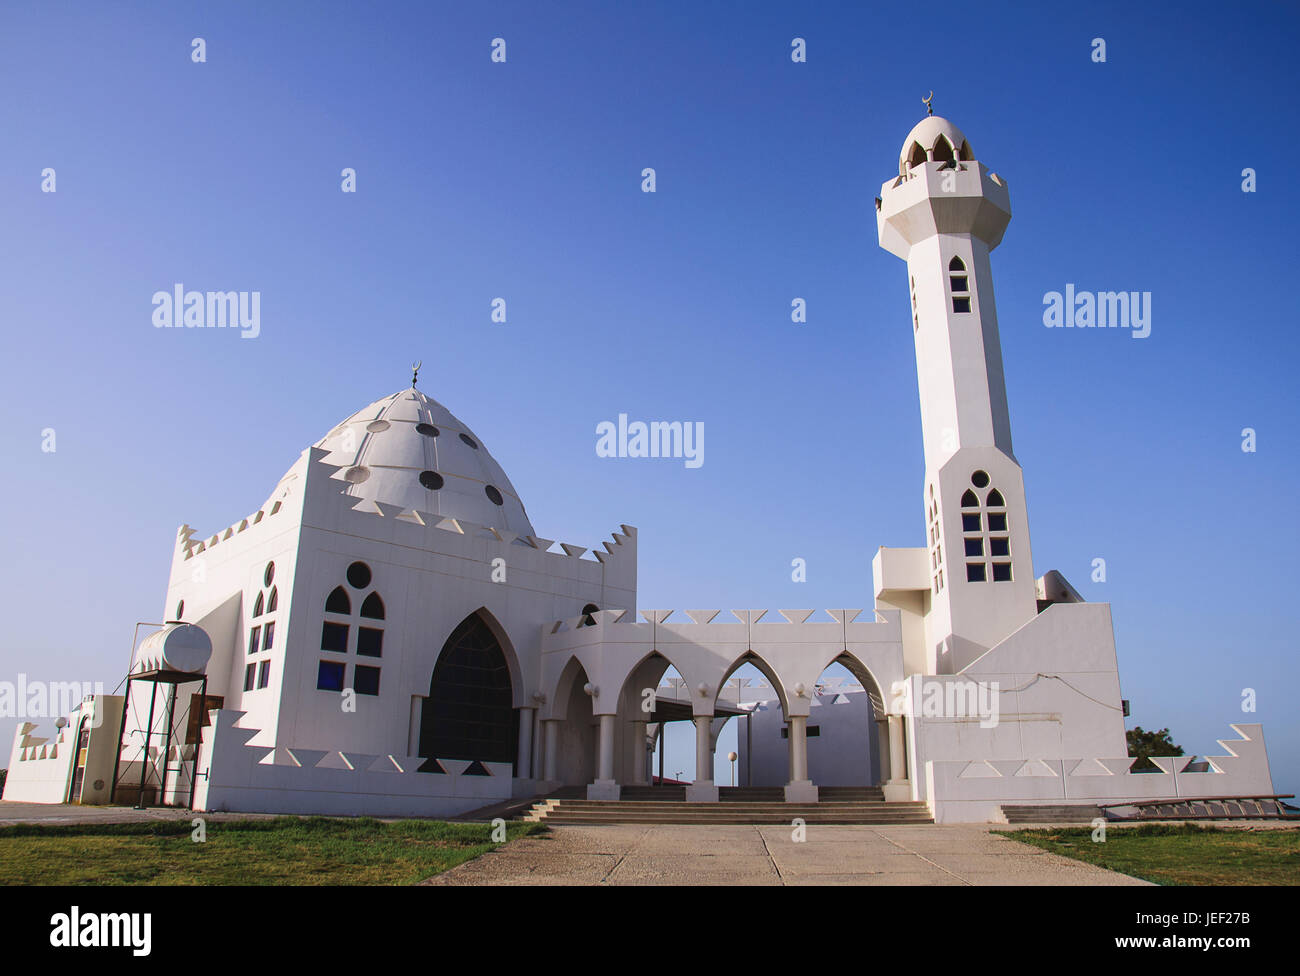 Mosque in Al Khobar, Saudi Arabia Stock Photo